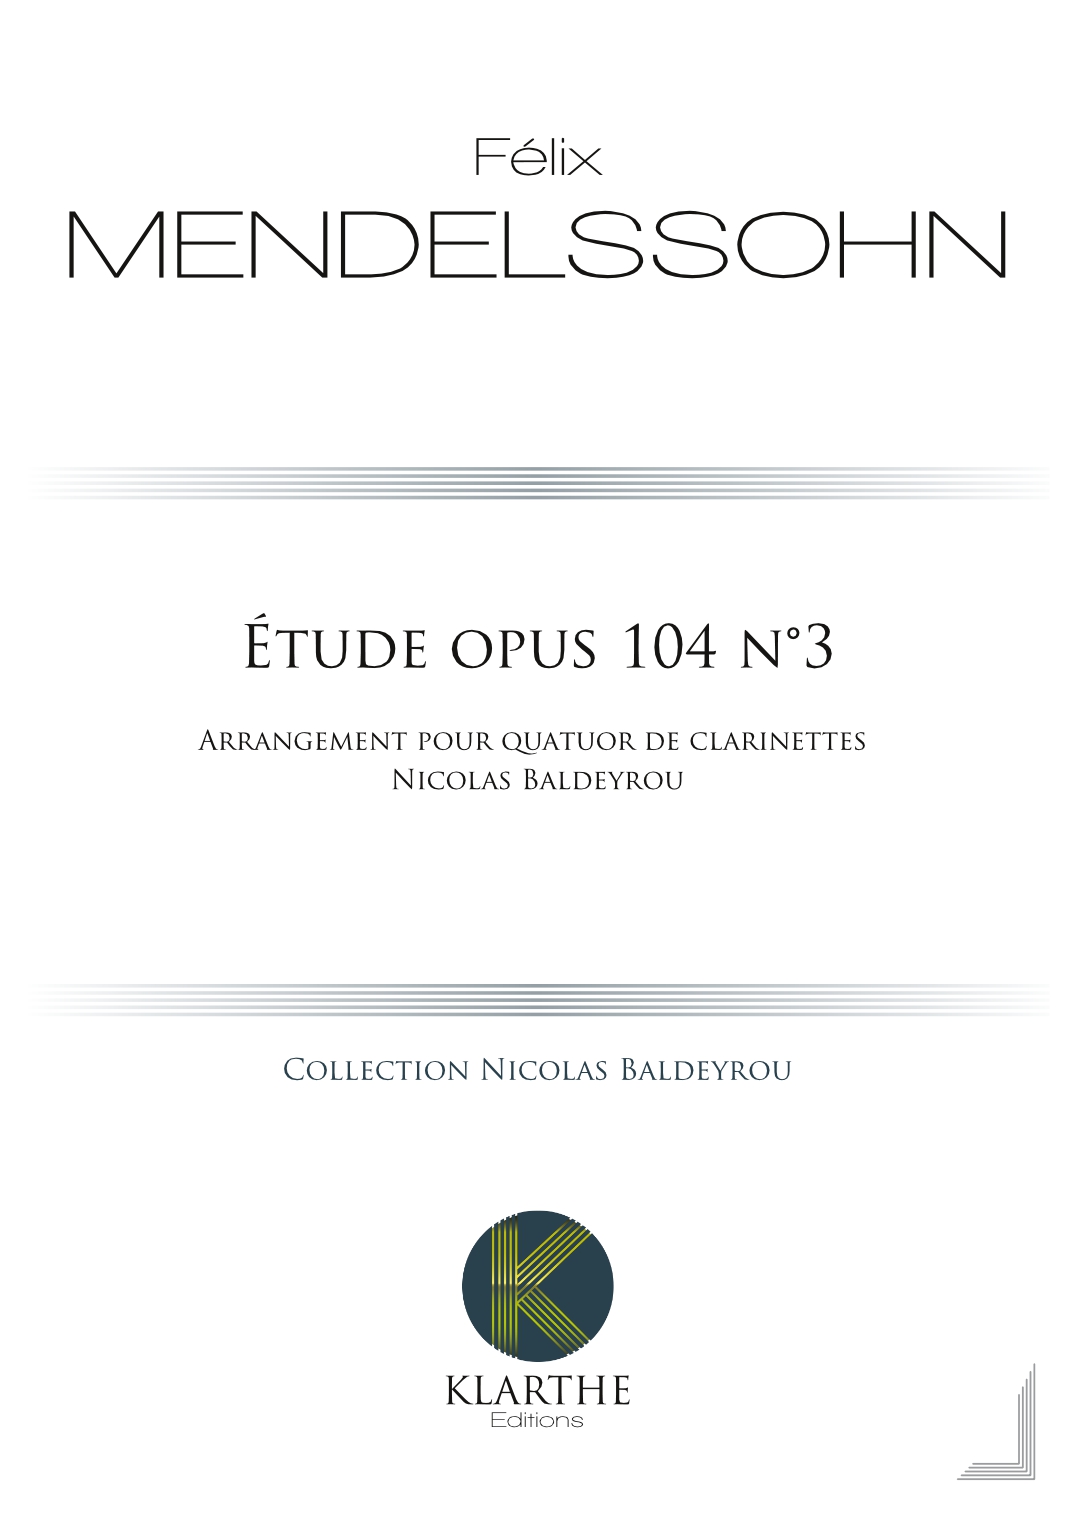 Etude opus 104 n3 (MENDELSSOHN-BARTHOLDY FELIX)